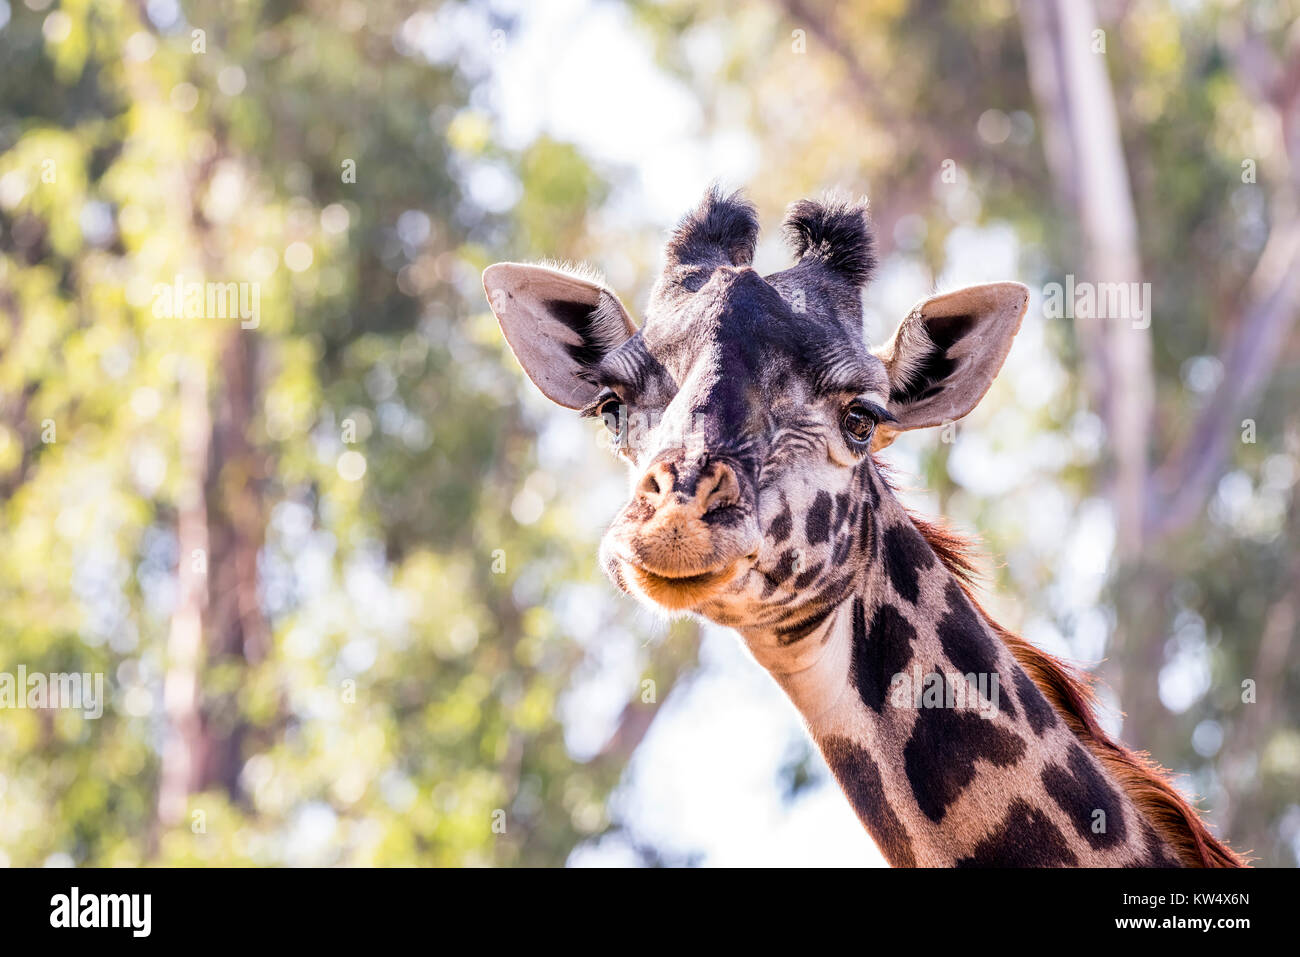 Une girafe camouflée, sauvages errant dans de grands arbres montre sa belle et grande, les yeux bruns. Banque D'Images